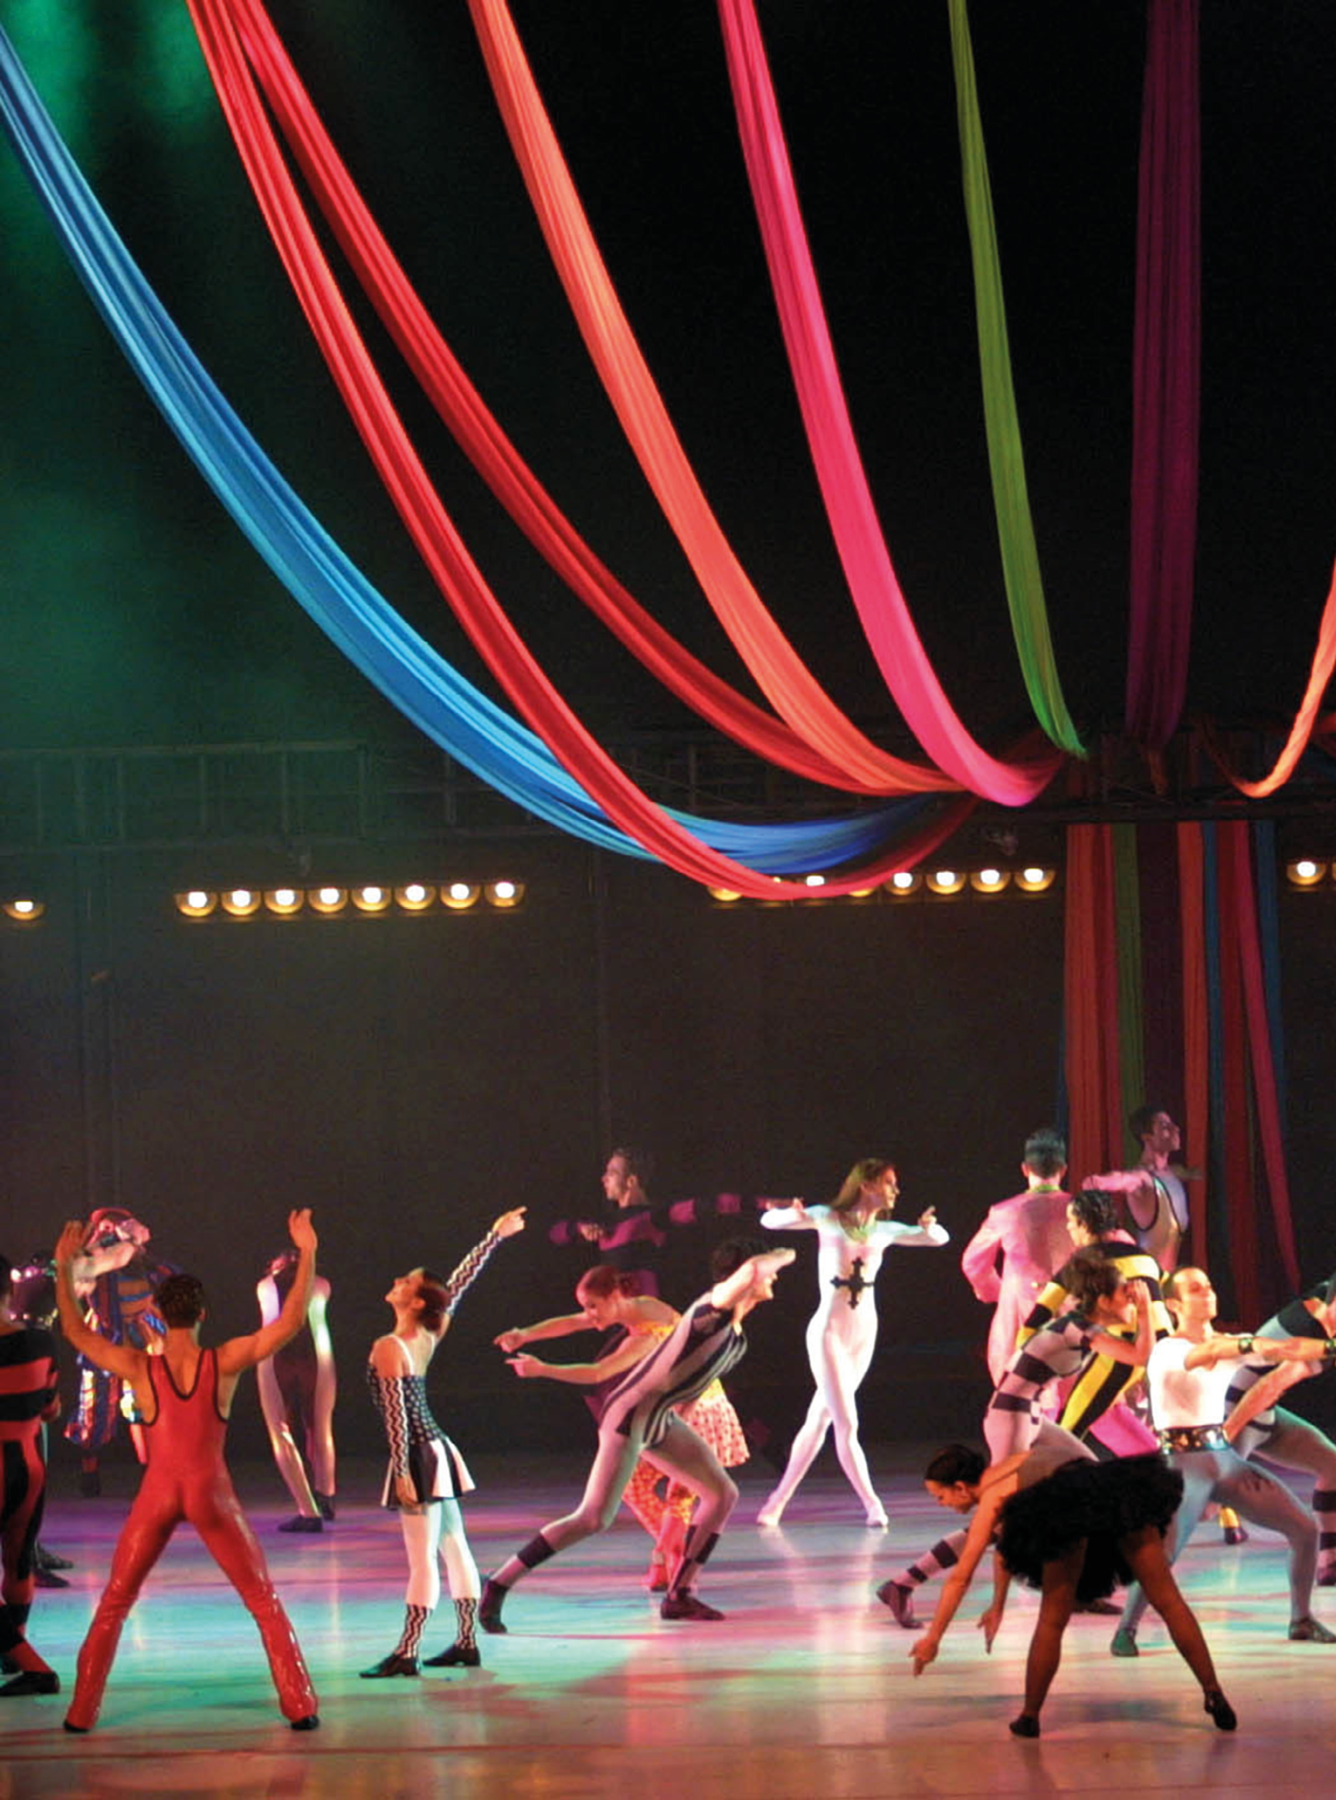 Fotografia. Diversos bailarinos com roupas circenses, distribuídos sobre um palco iluminado em várias cores. Todos estão em pé, mas em poses diferentes, fazendo uma performance. Na parte superior, tecidos coloridos suspensos formando ondulações que imitam a lona de um circo presa em um poste no centro do picadeiro.